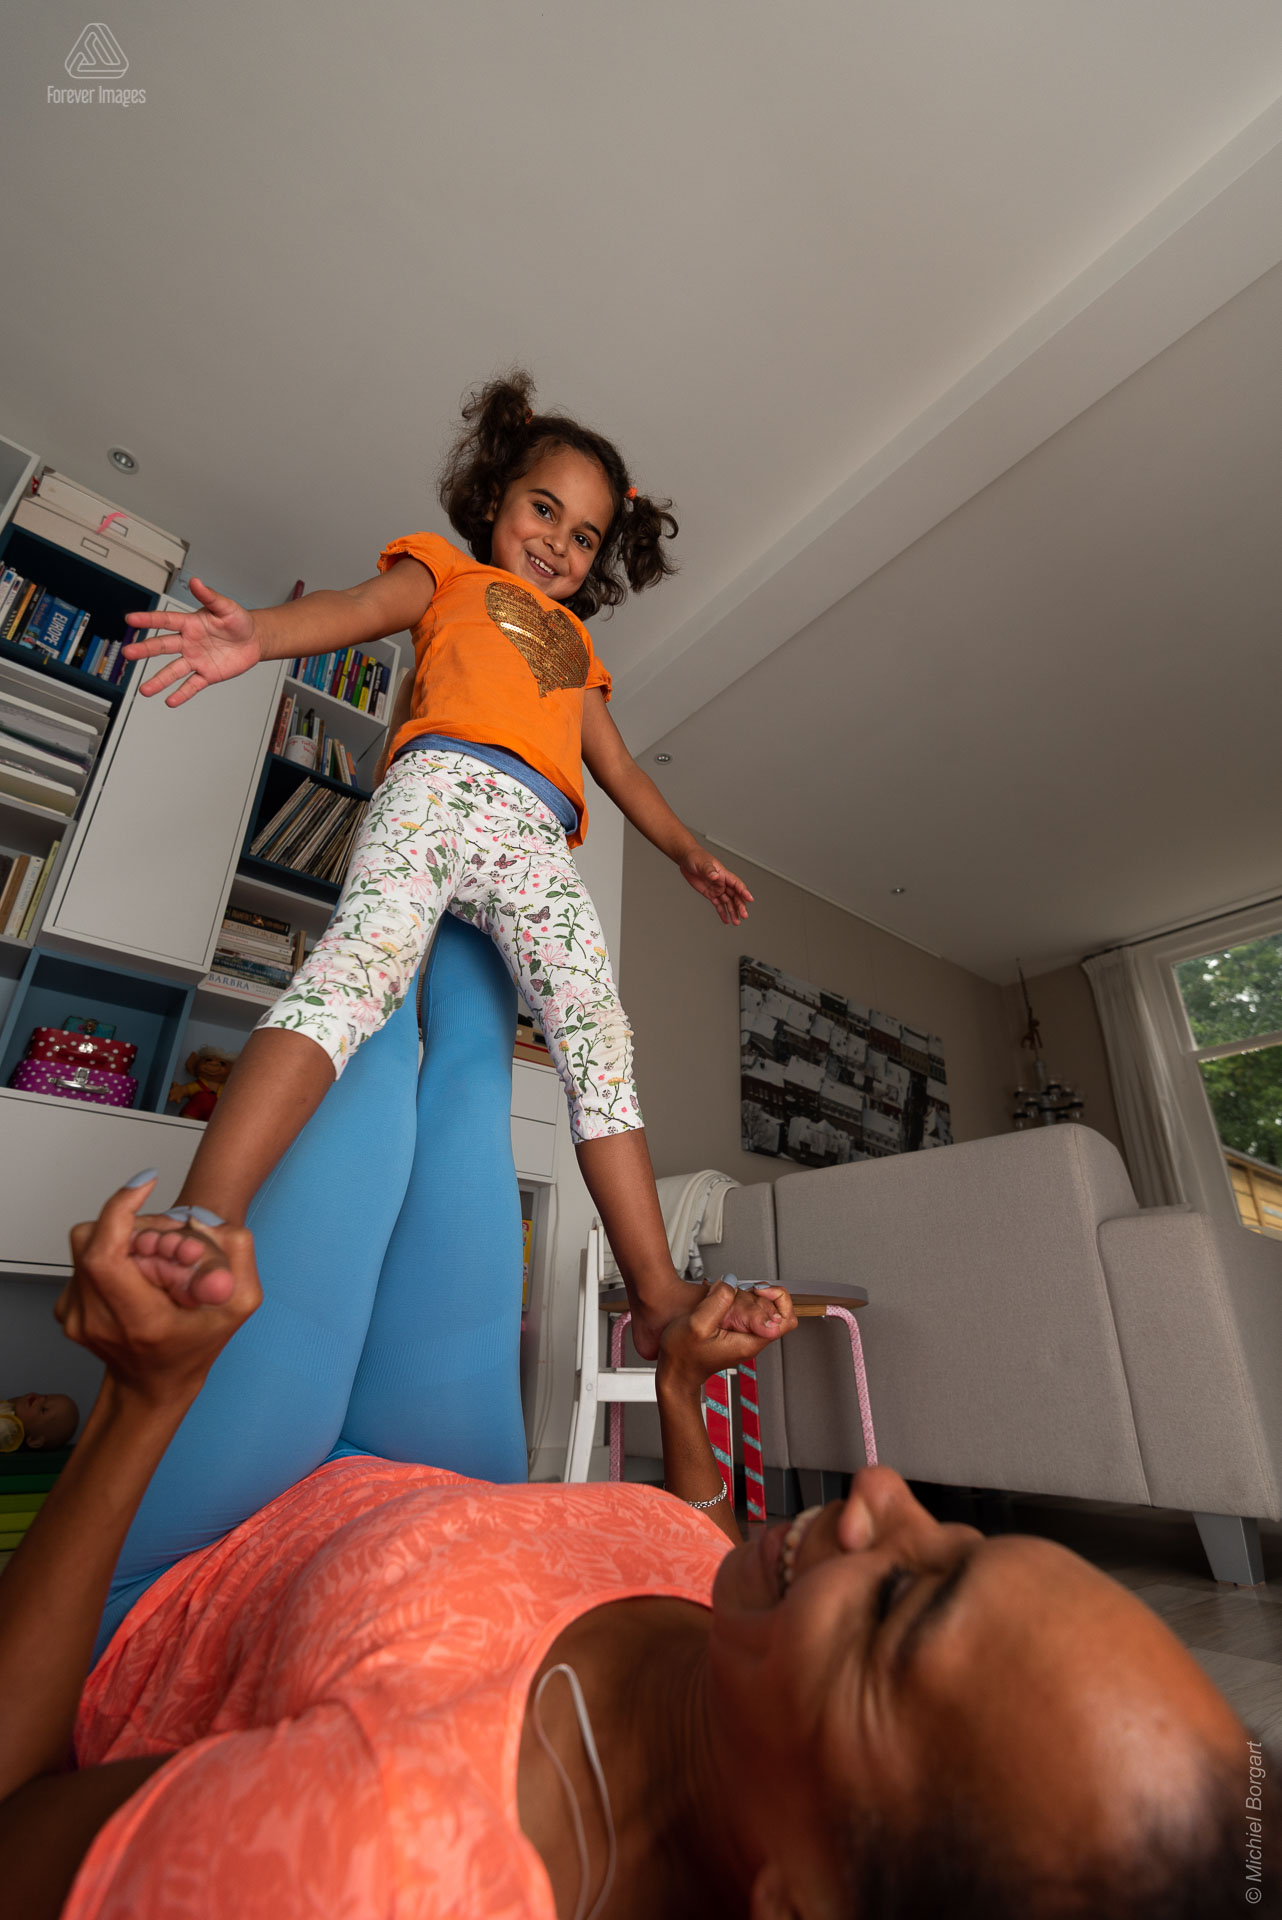 Portretfoto moeder en dochter acrobatiek staan | Portretfotograaf Michiel Borgart - Forever Images.